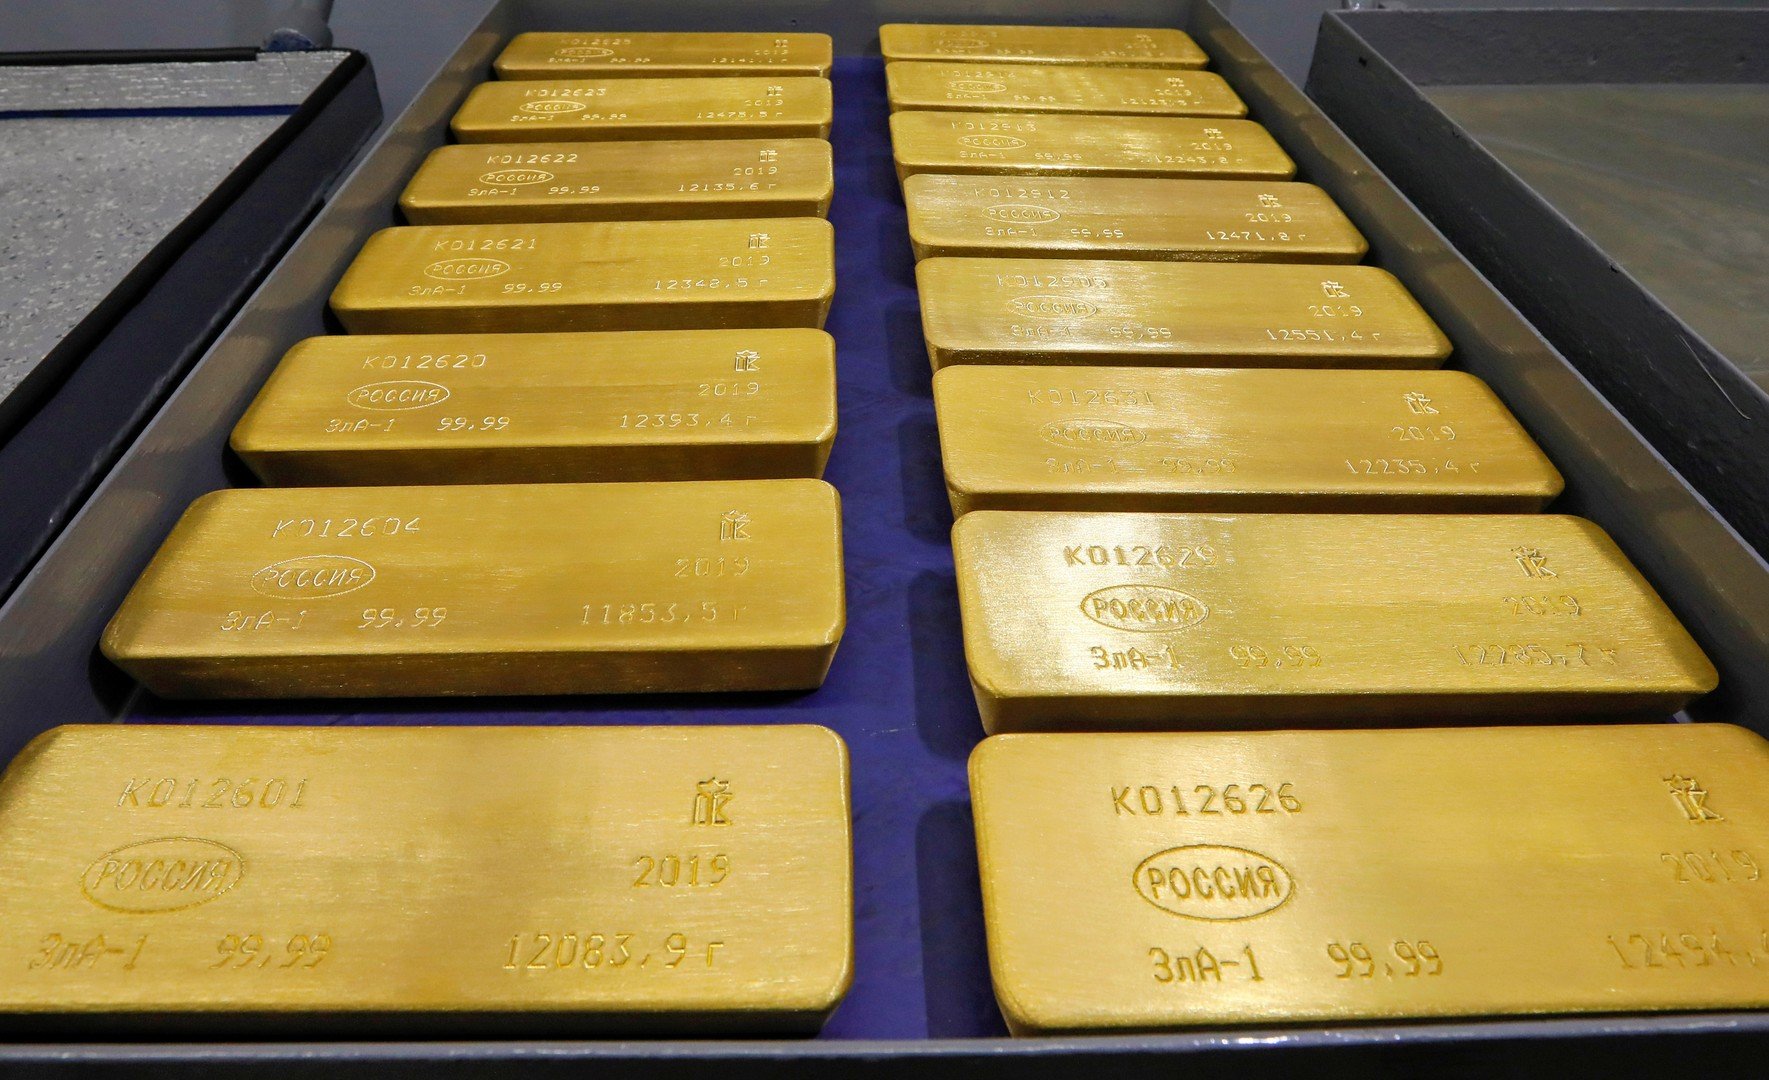 الذهب يرتفع إلى مستويات قياسية